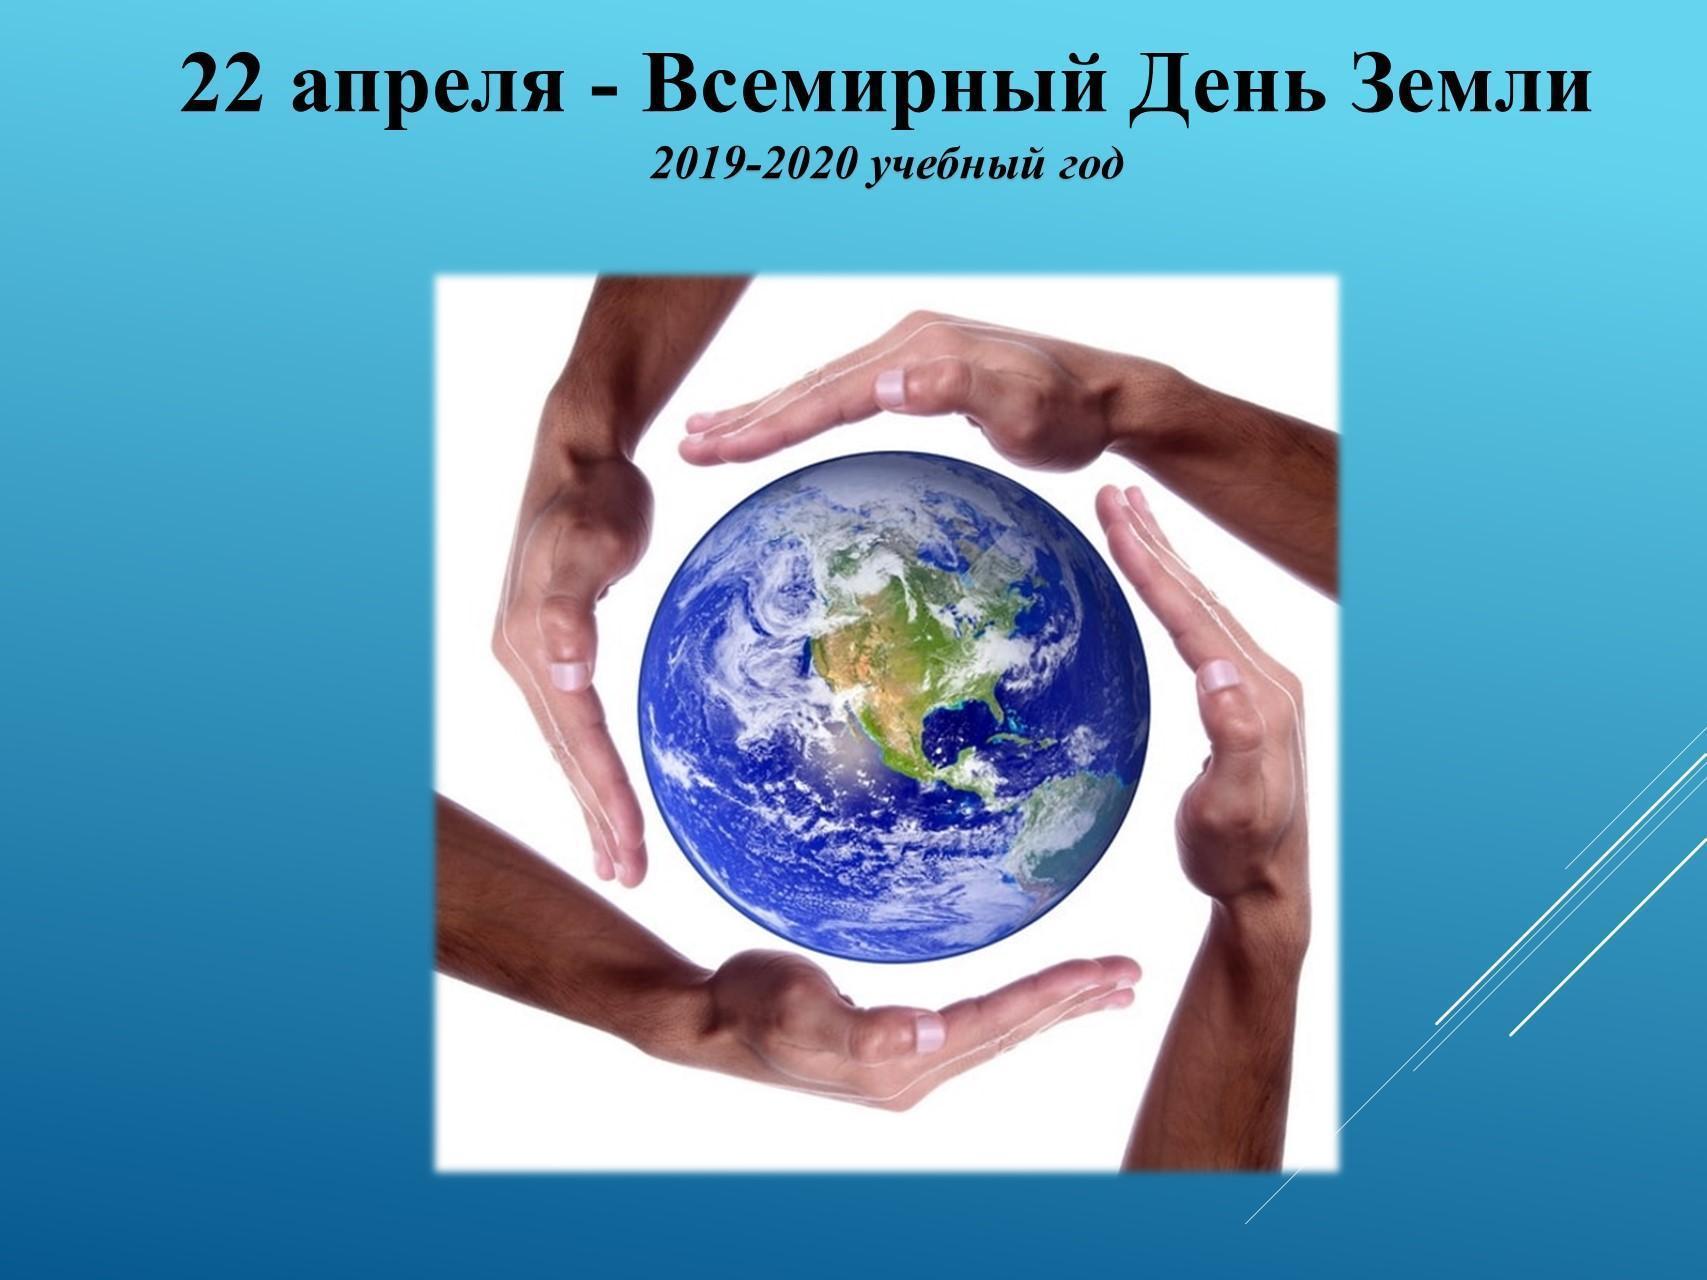 22 апреля - Всемирный День Земли